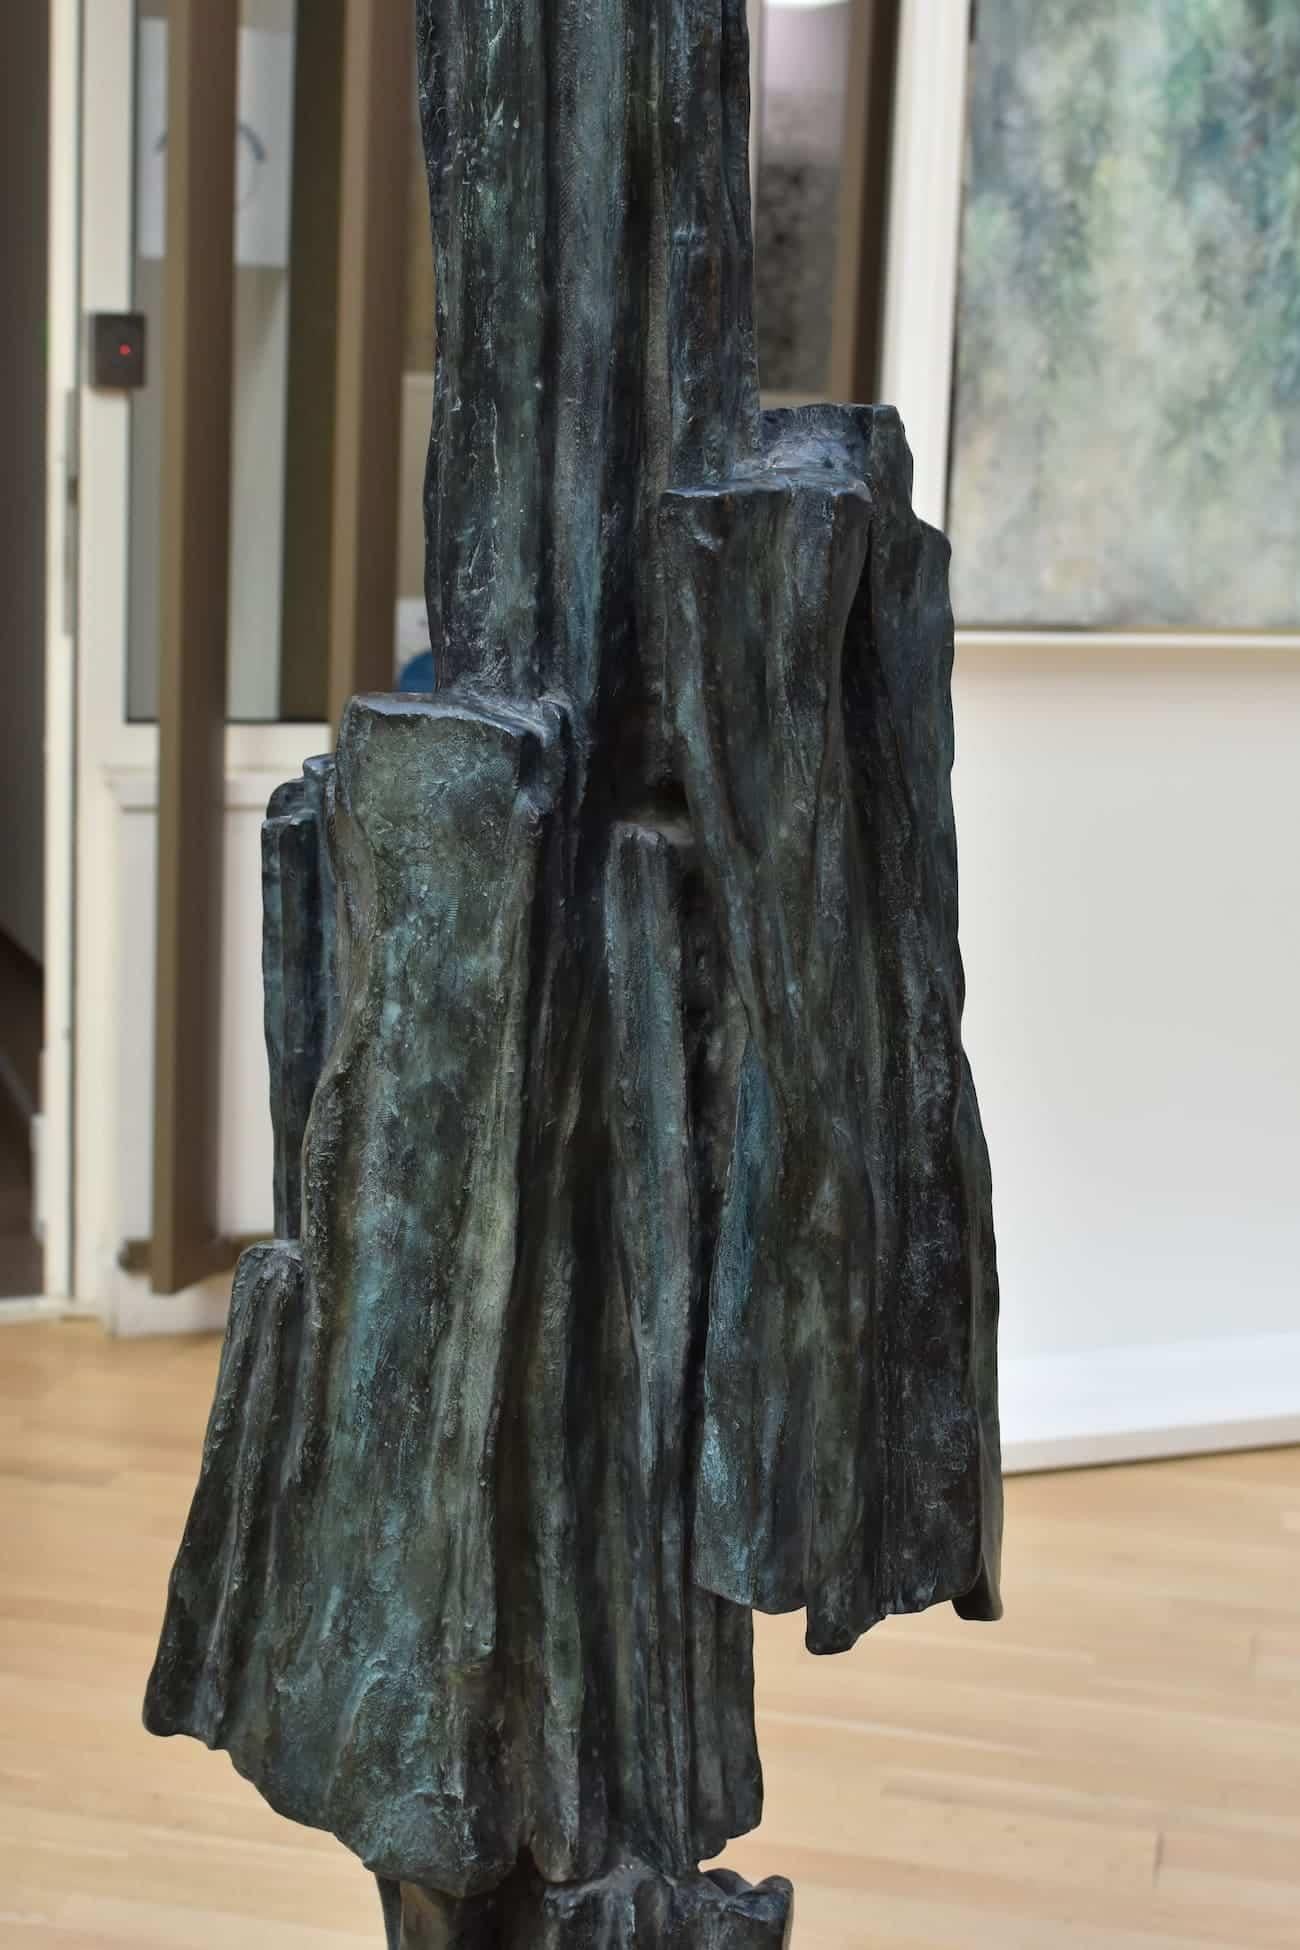 Signs & Writings No. 1 de M. I. - grande sculpture en bronze, abstraite, d'une hauteur de 1,80 m. - Contemporain Sculpture par Martine Demal